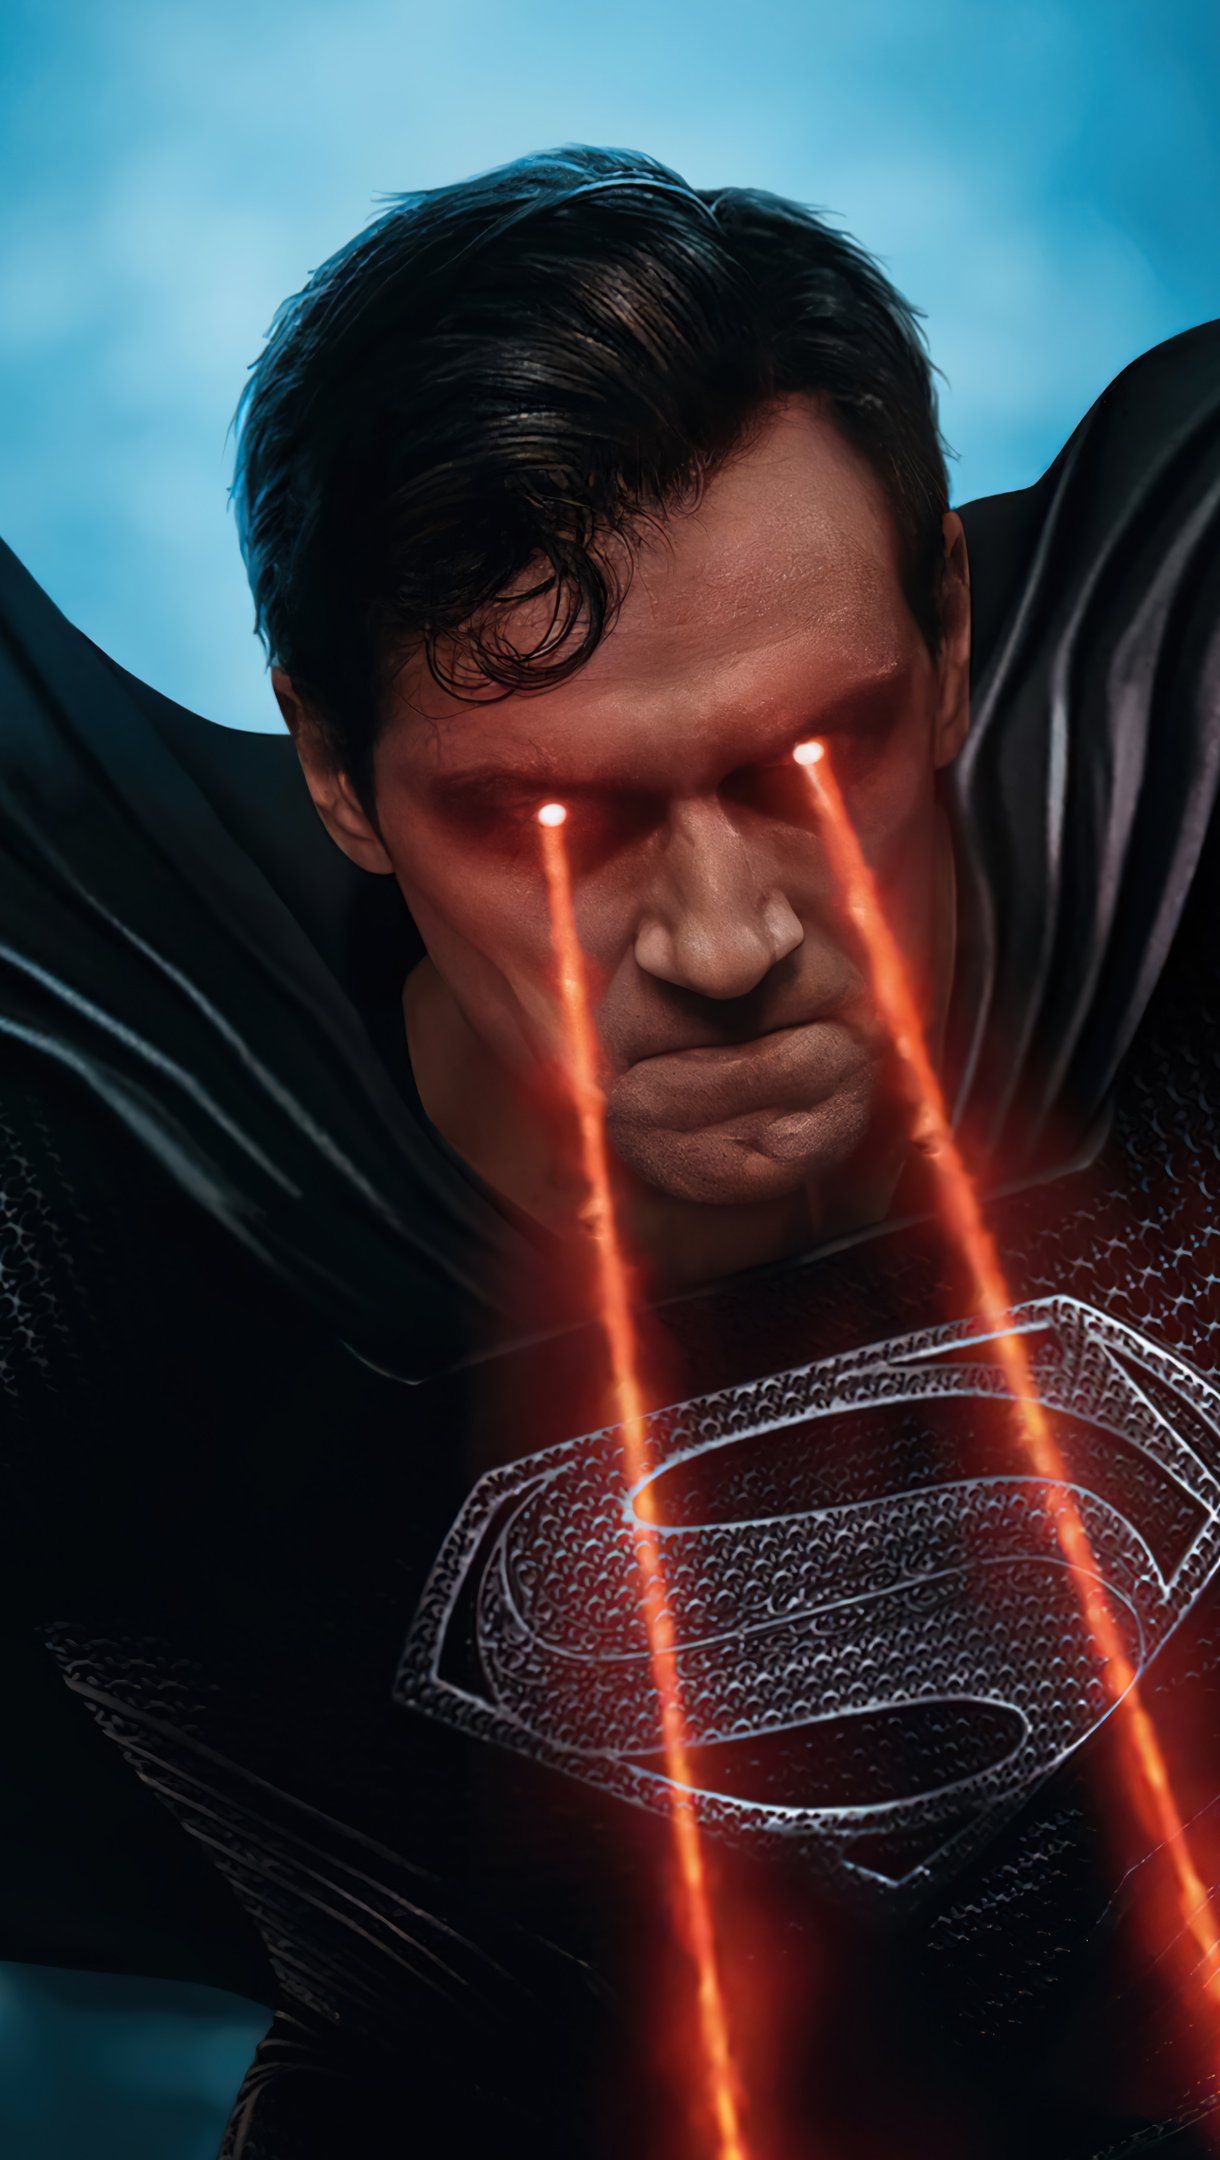 Superman black suit Justice League Snyder cut Wallpaper 4k Ultra HD